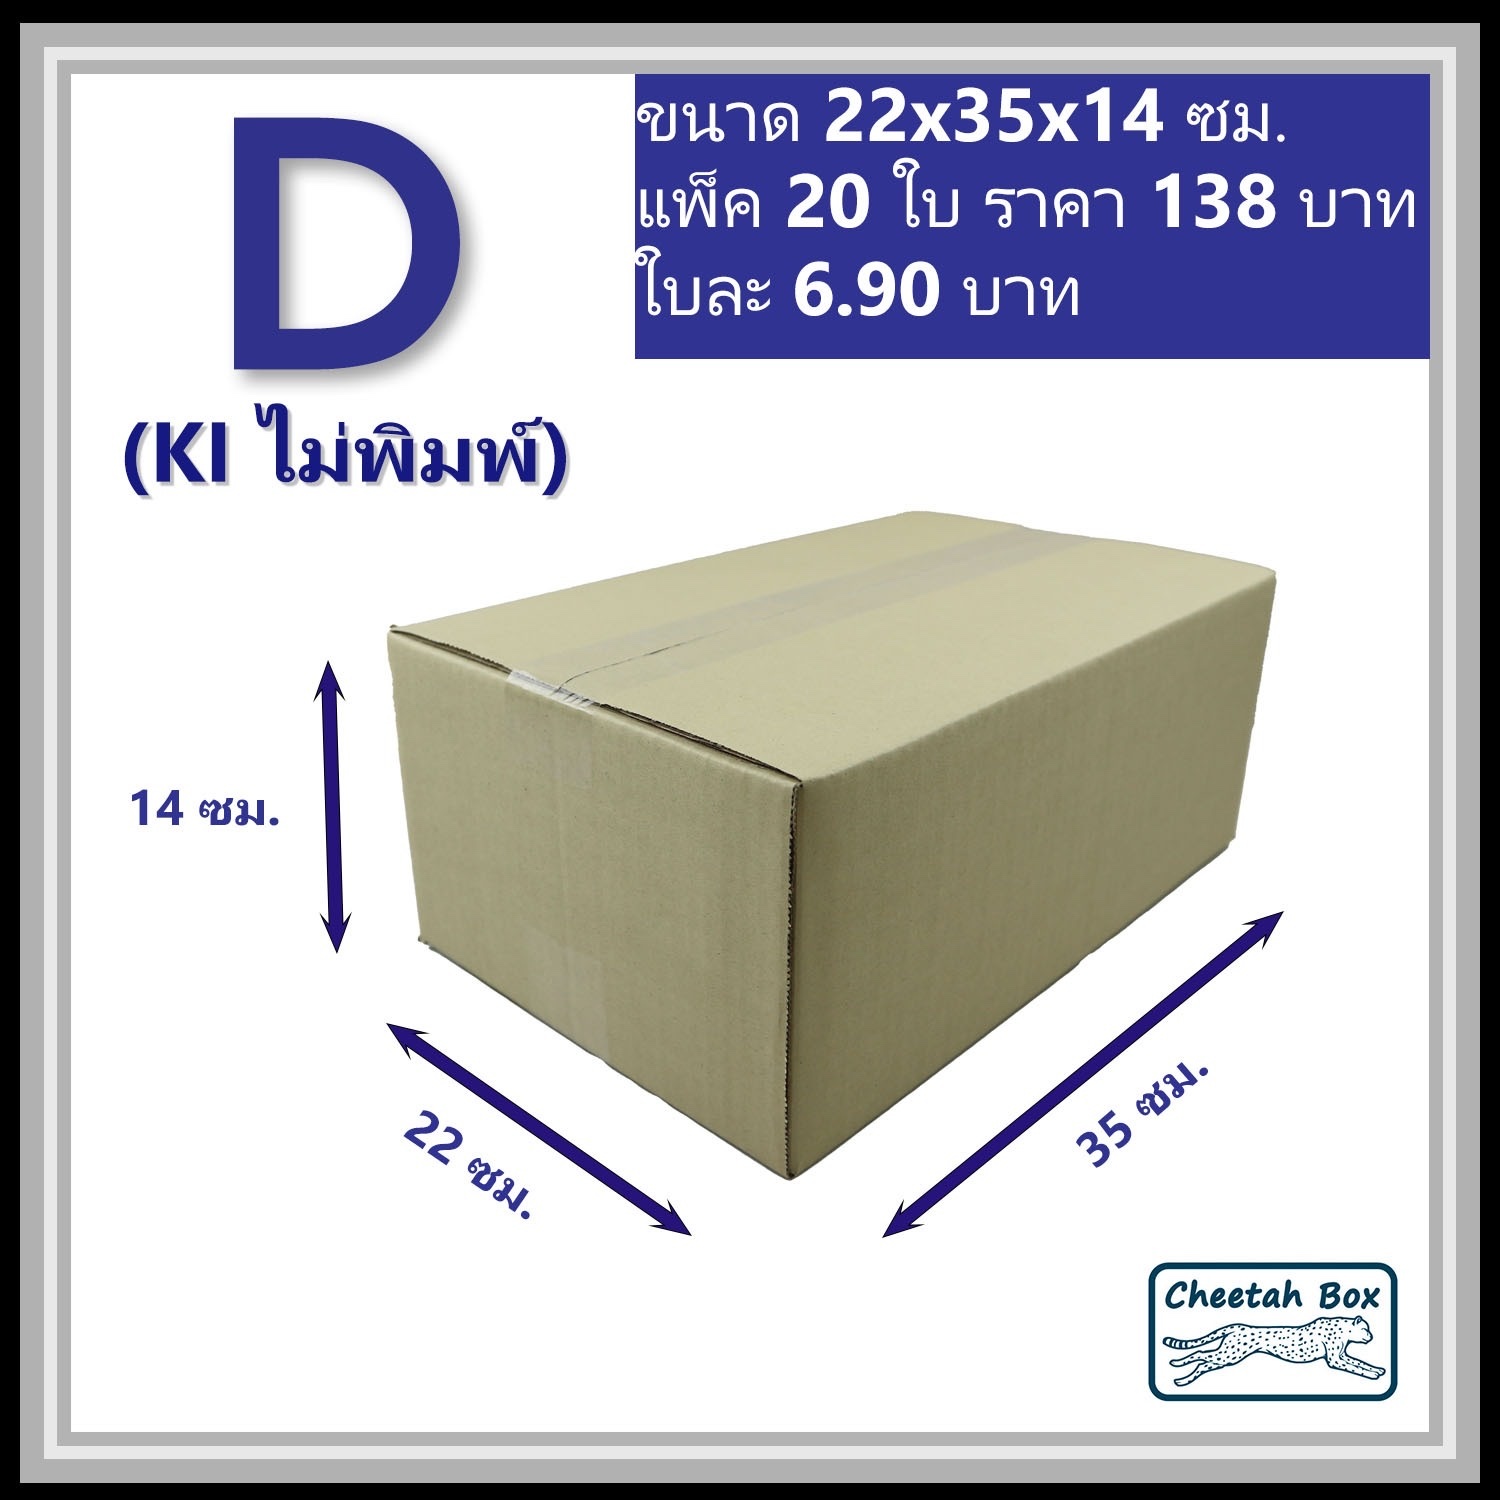 กล่องพัสดุ 3 ชั้น รหัส D(ง) ไม่พิมพ์ (Cheetah Box) 22W x 35L x 14H cm.